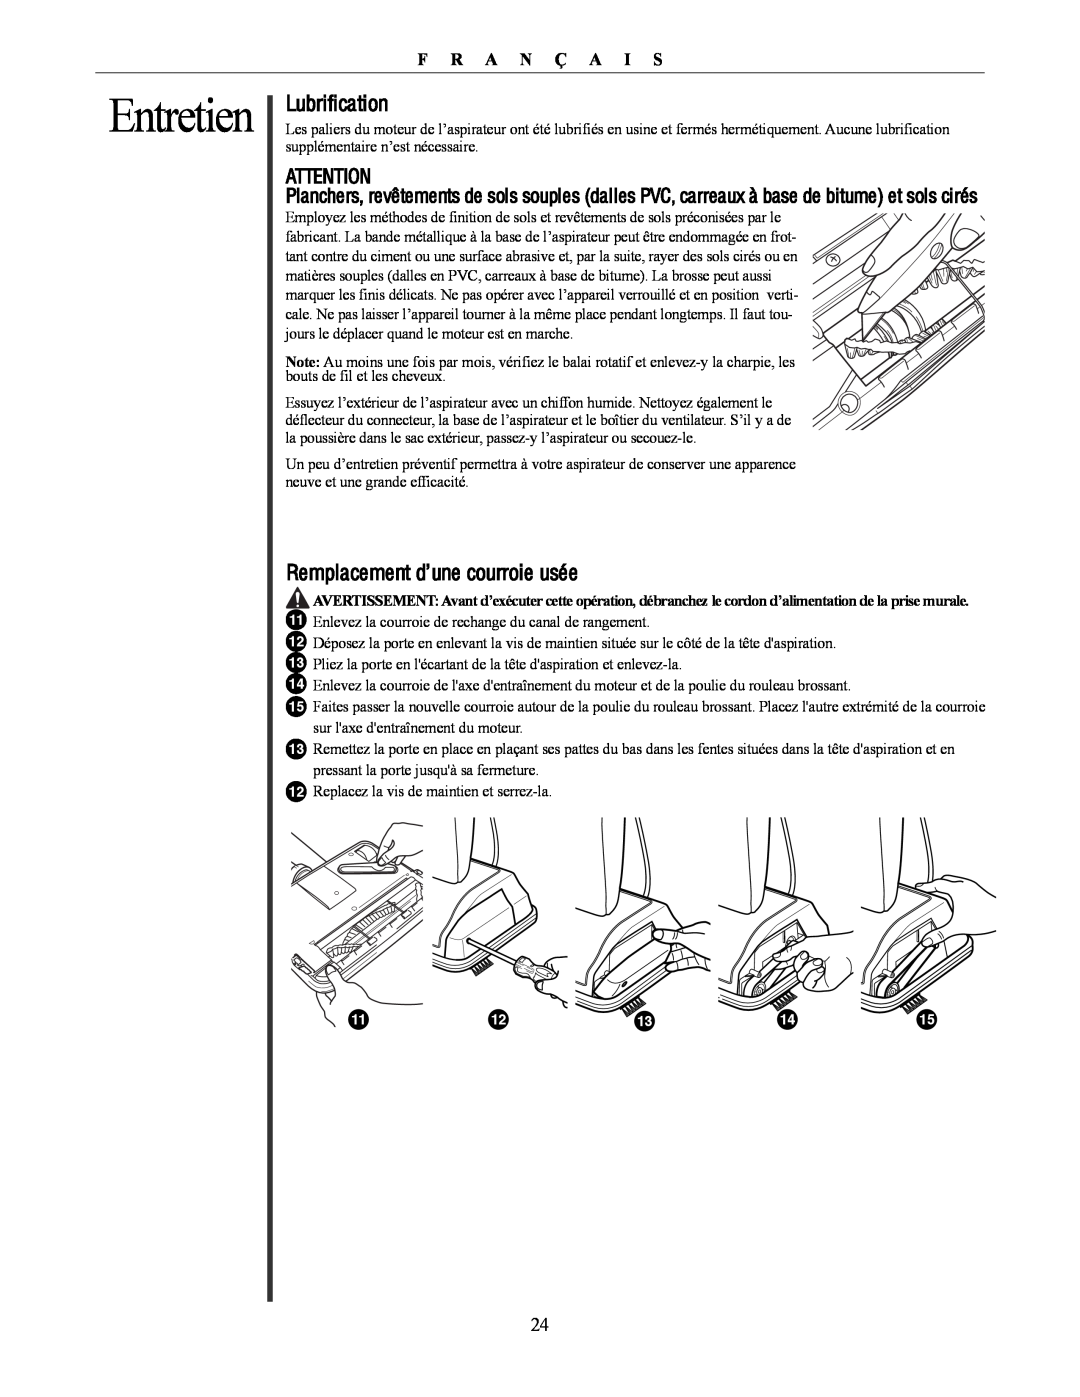 Oreck U4300 manual Entretien, Lubrification, Remplacement d’une courroie usée, F R A N Ç A I S 